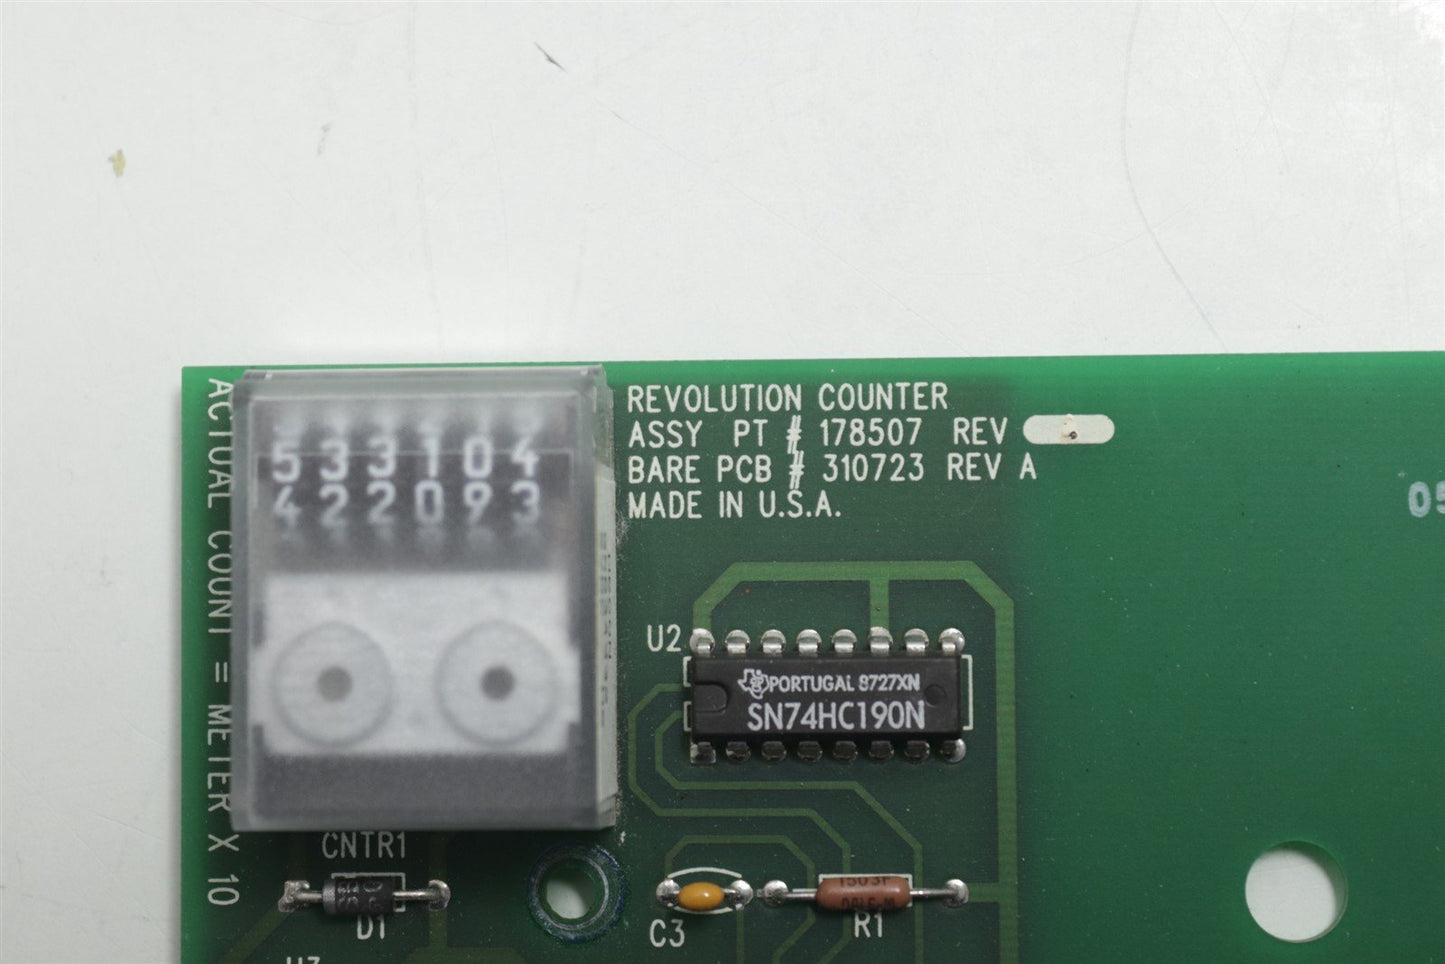 Philips Brilliance 40 CT Revolution Counter Board 178507